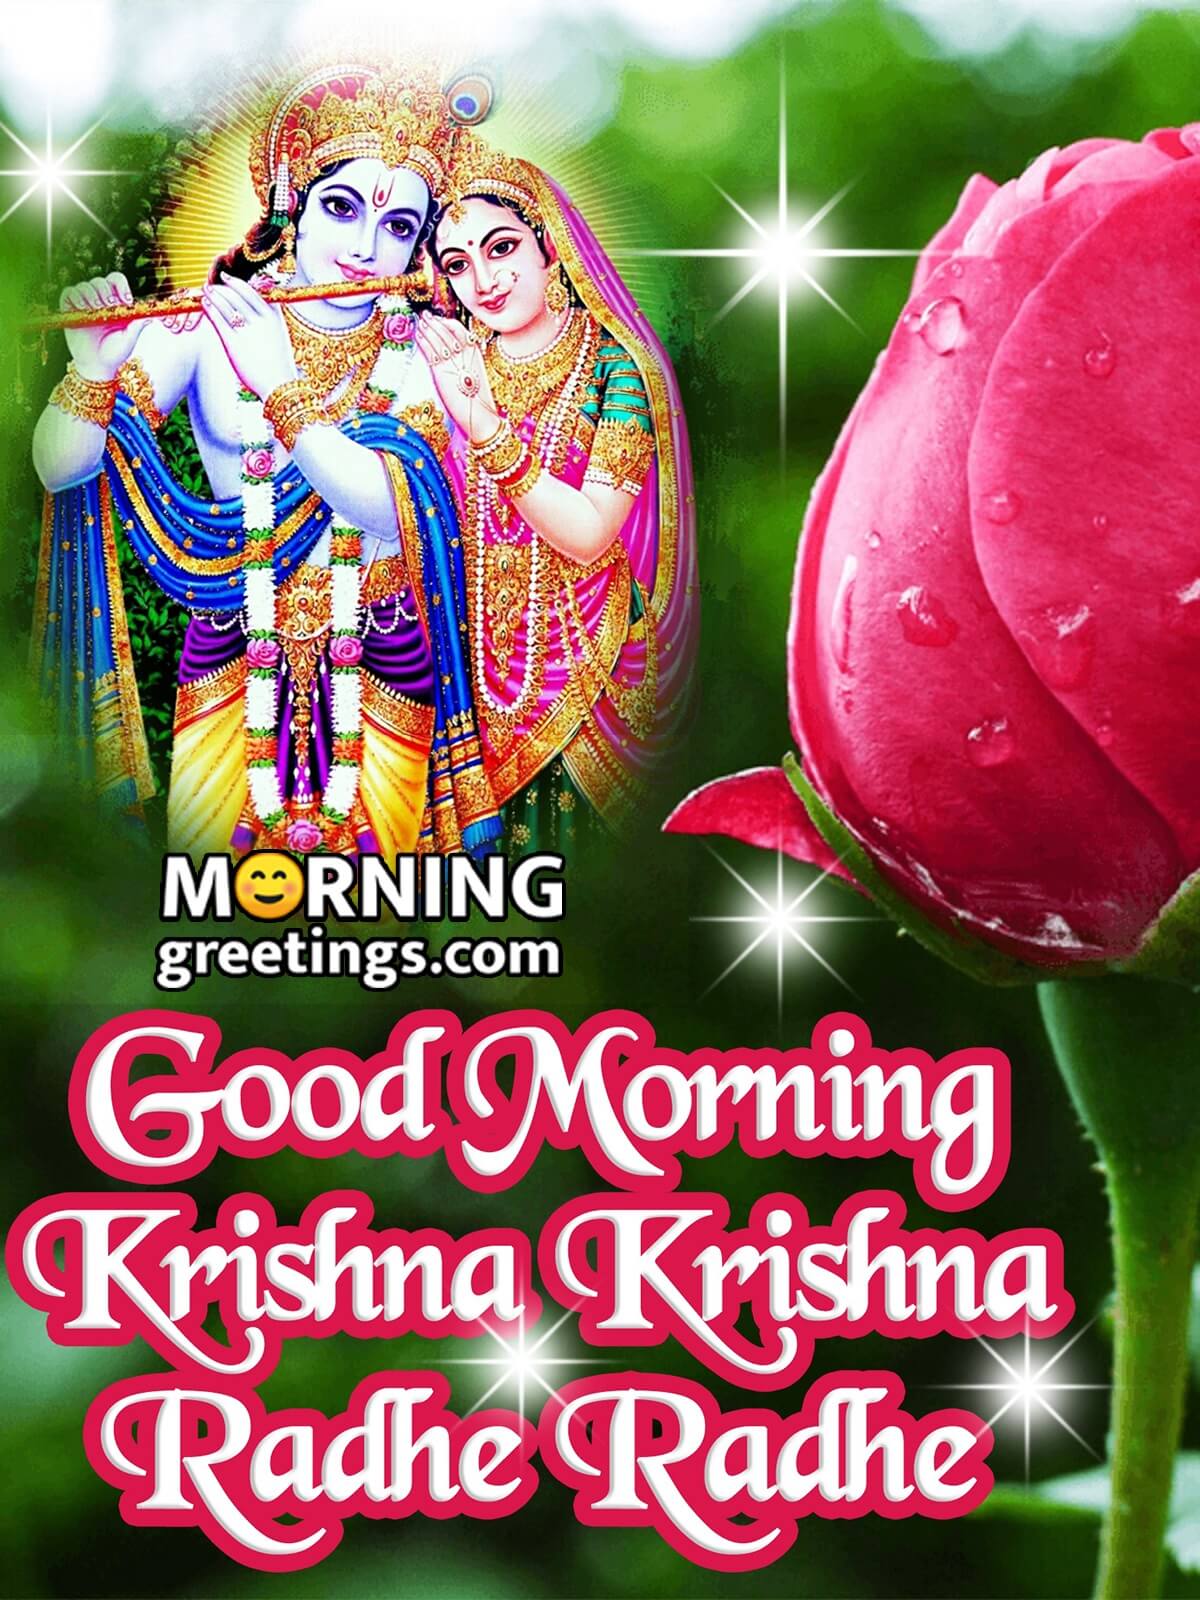 Good Morning Krishna Krishna Radhe Radhe